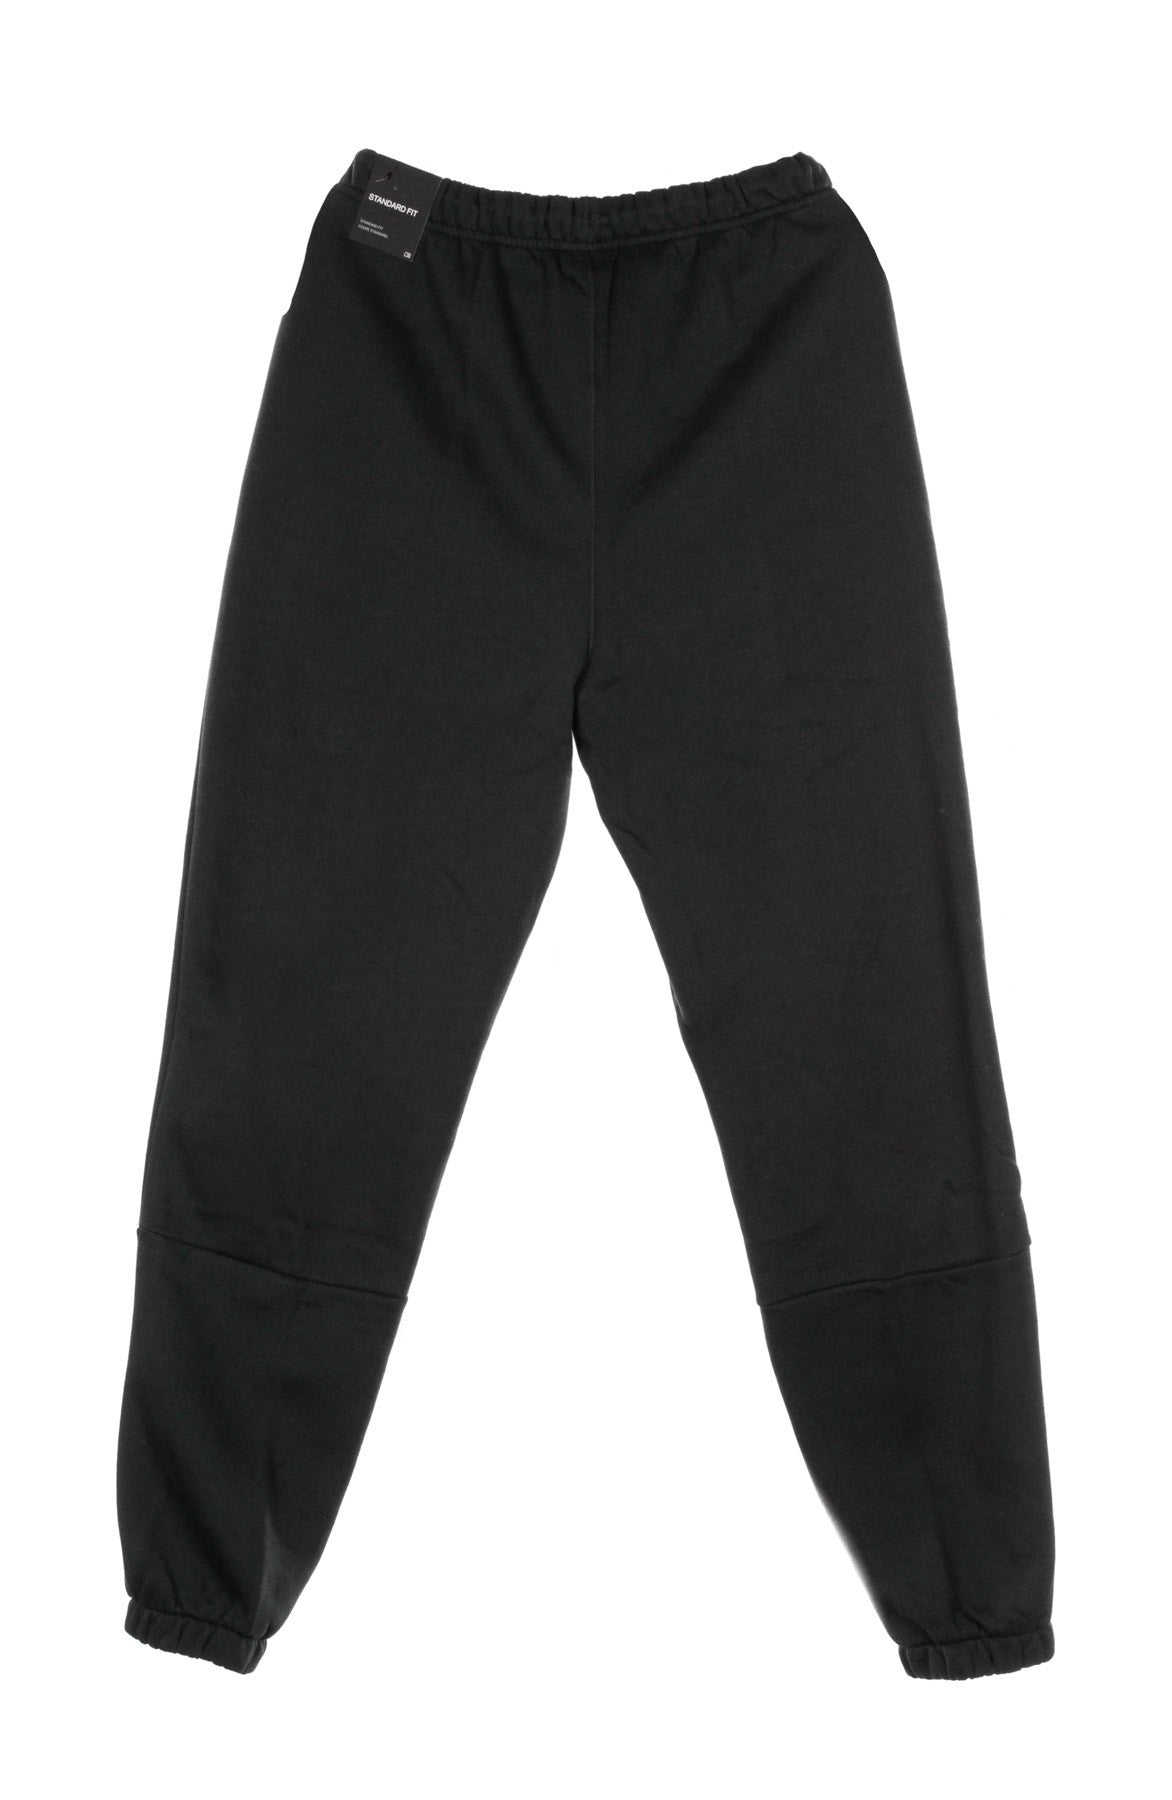 Pantalone Tuta Felpato Uomo Jumpman Air Fleece Black/black/black/white